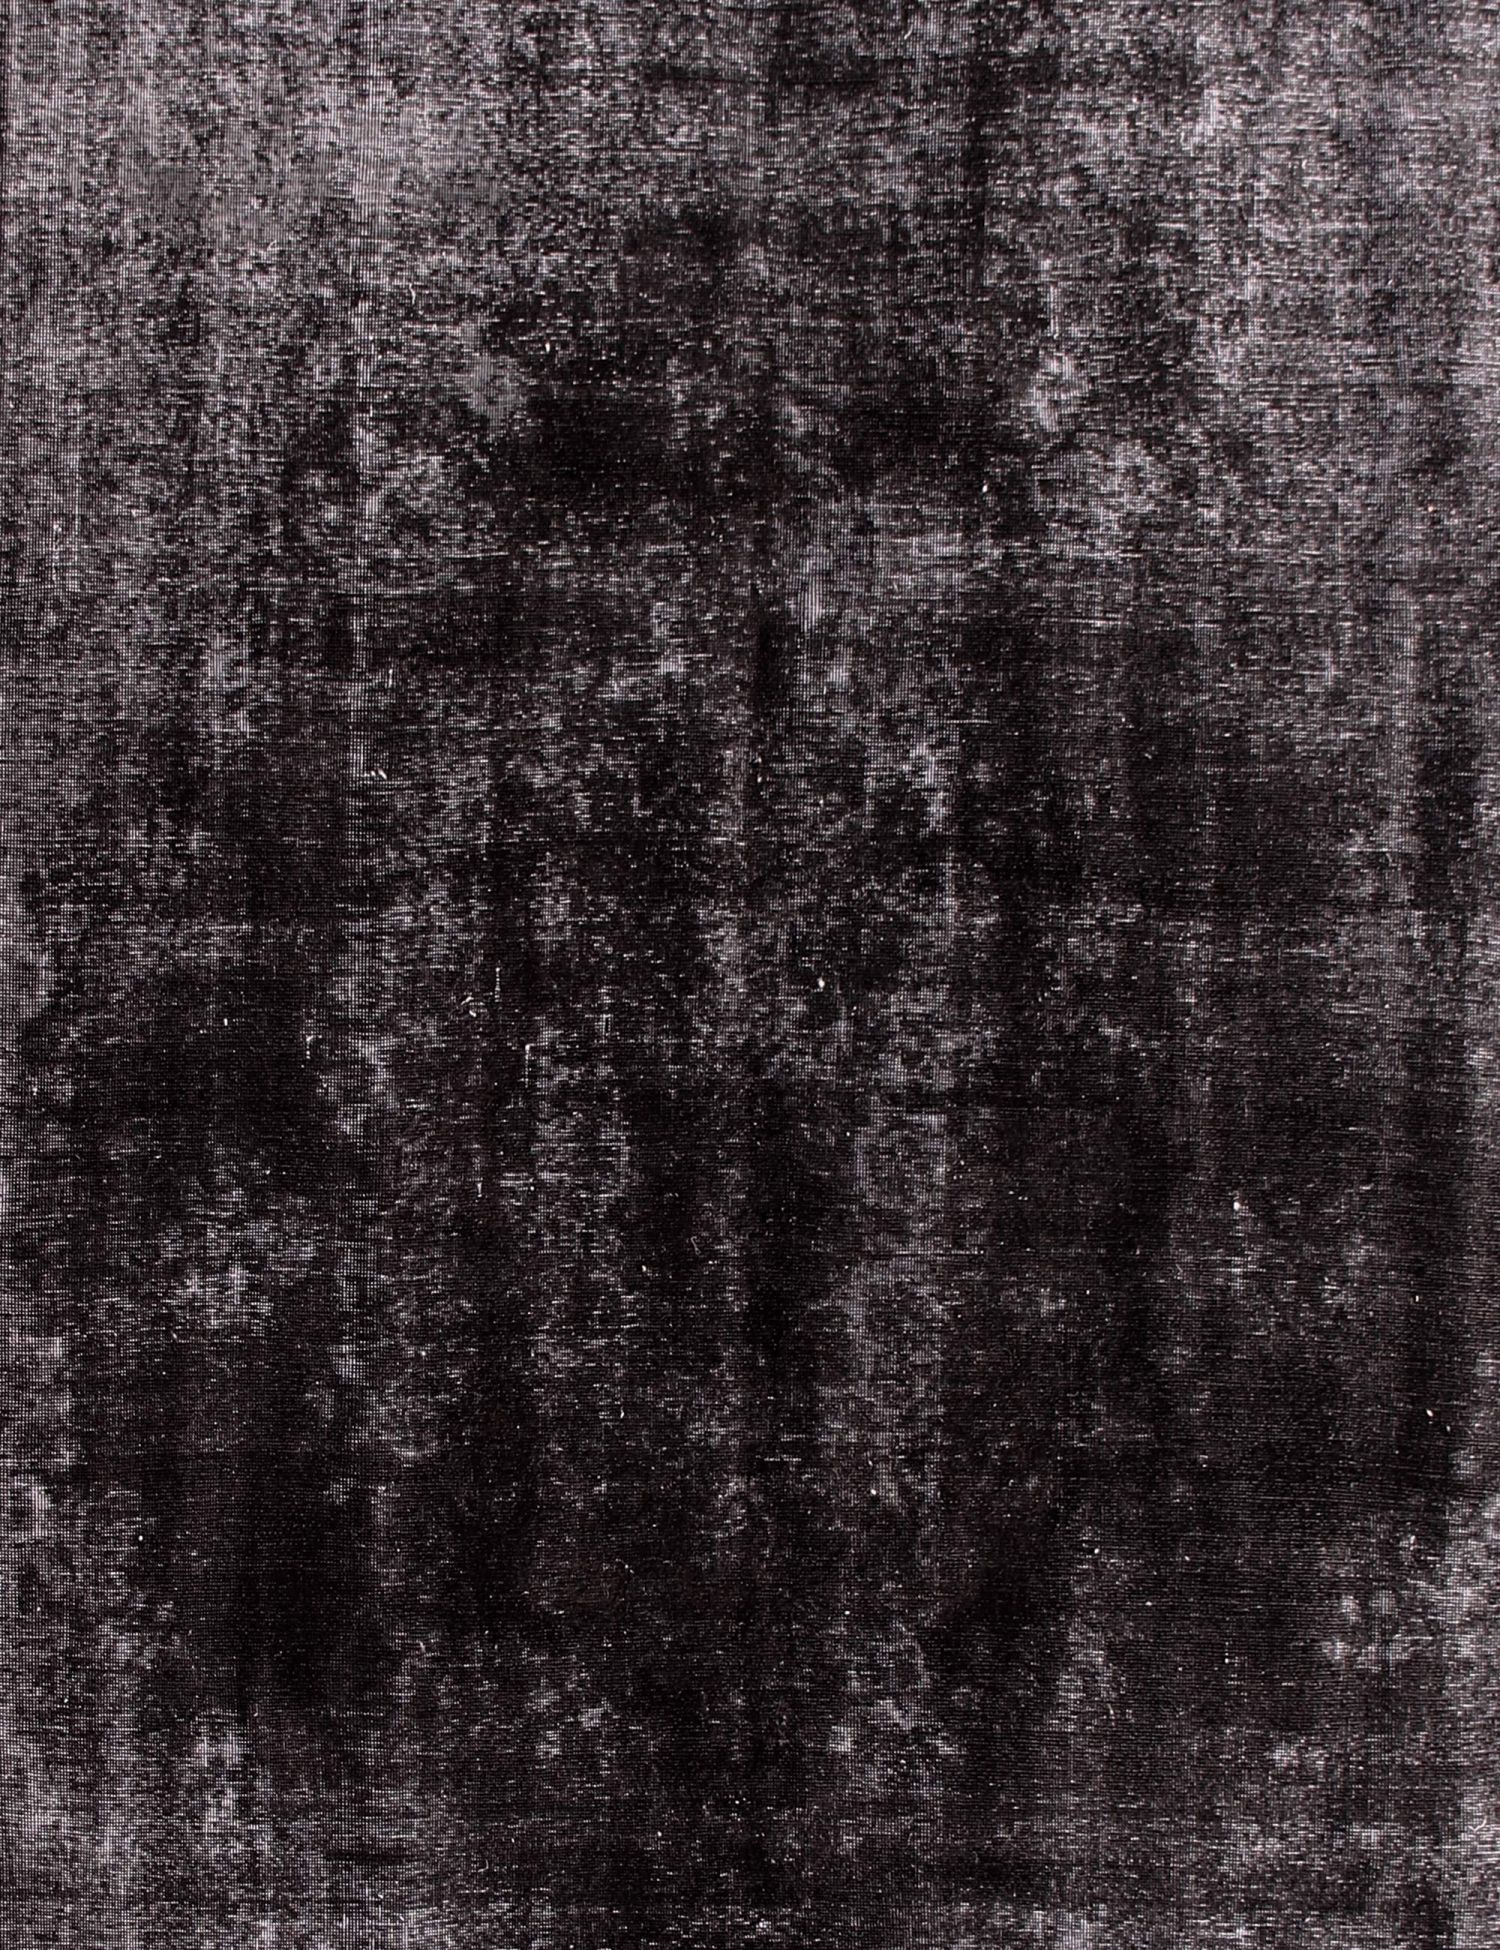 Persian Vintage Carpet  black <br/>361 x 290 cm